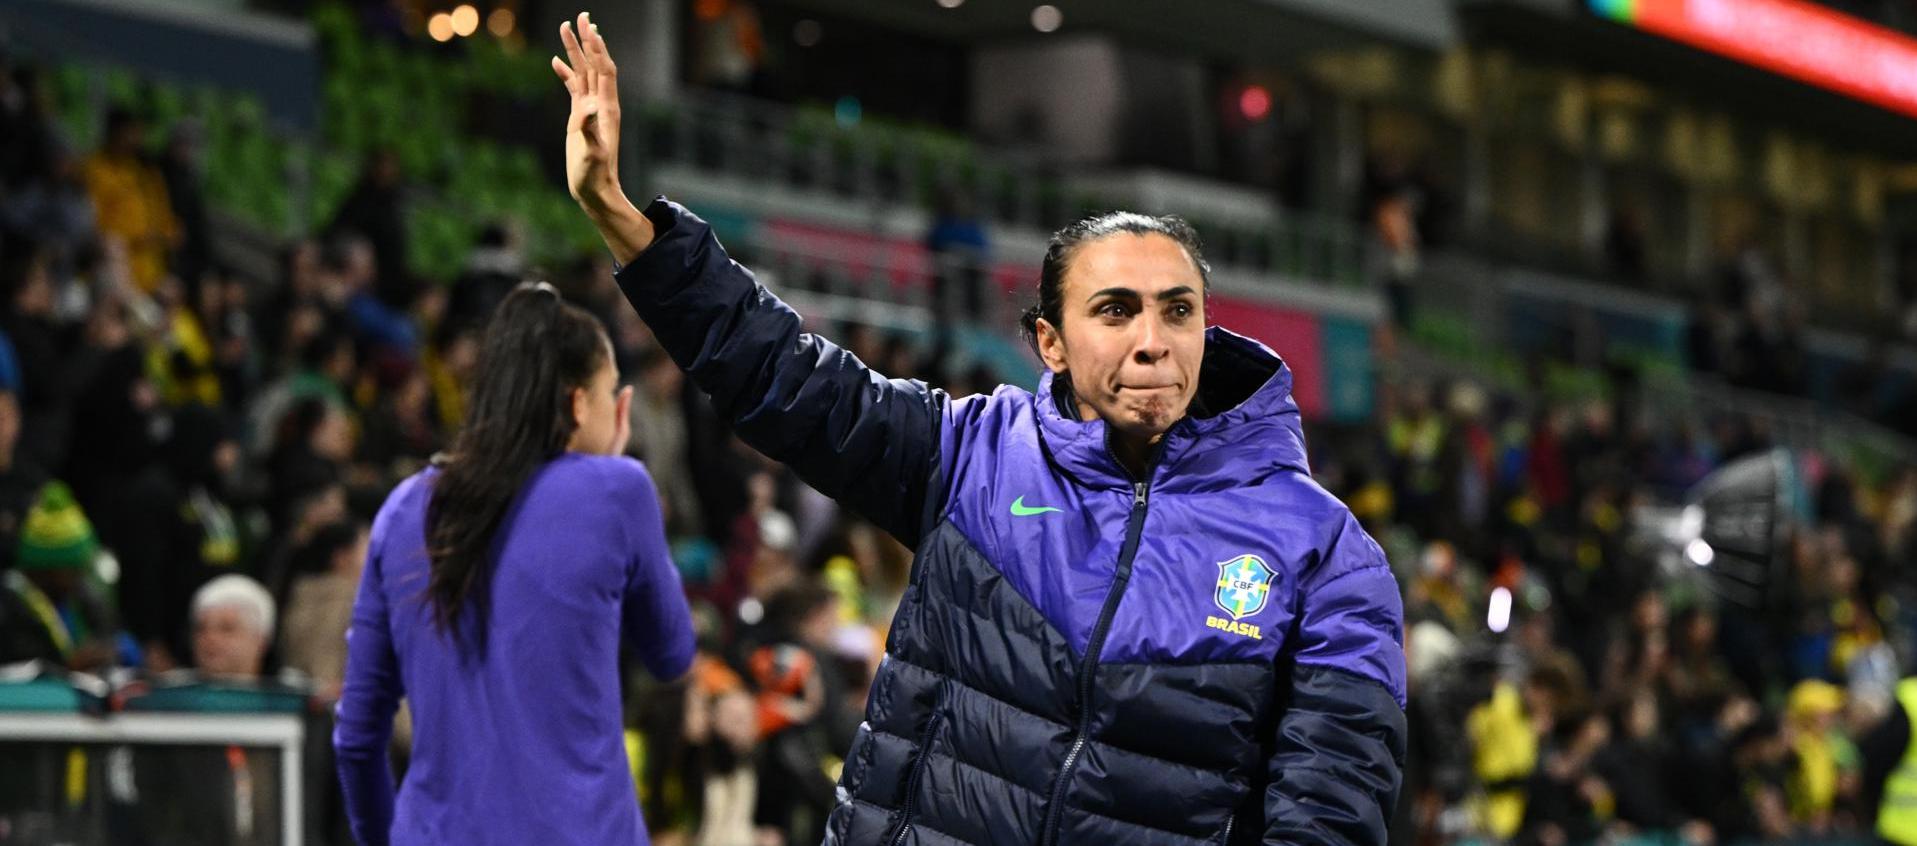 Marta saludando a los aficionados brasileños presentes en Australia.